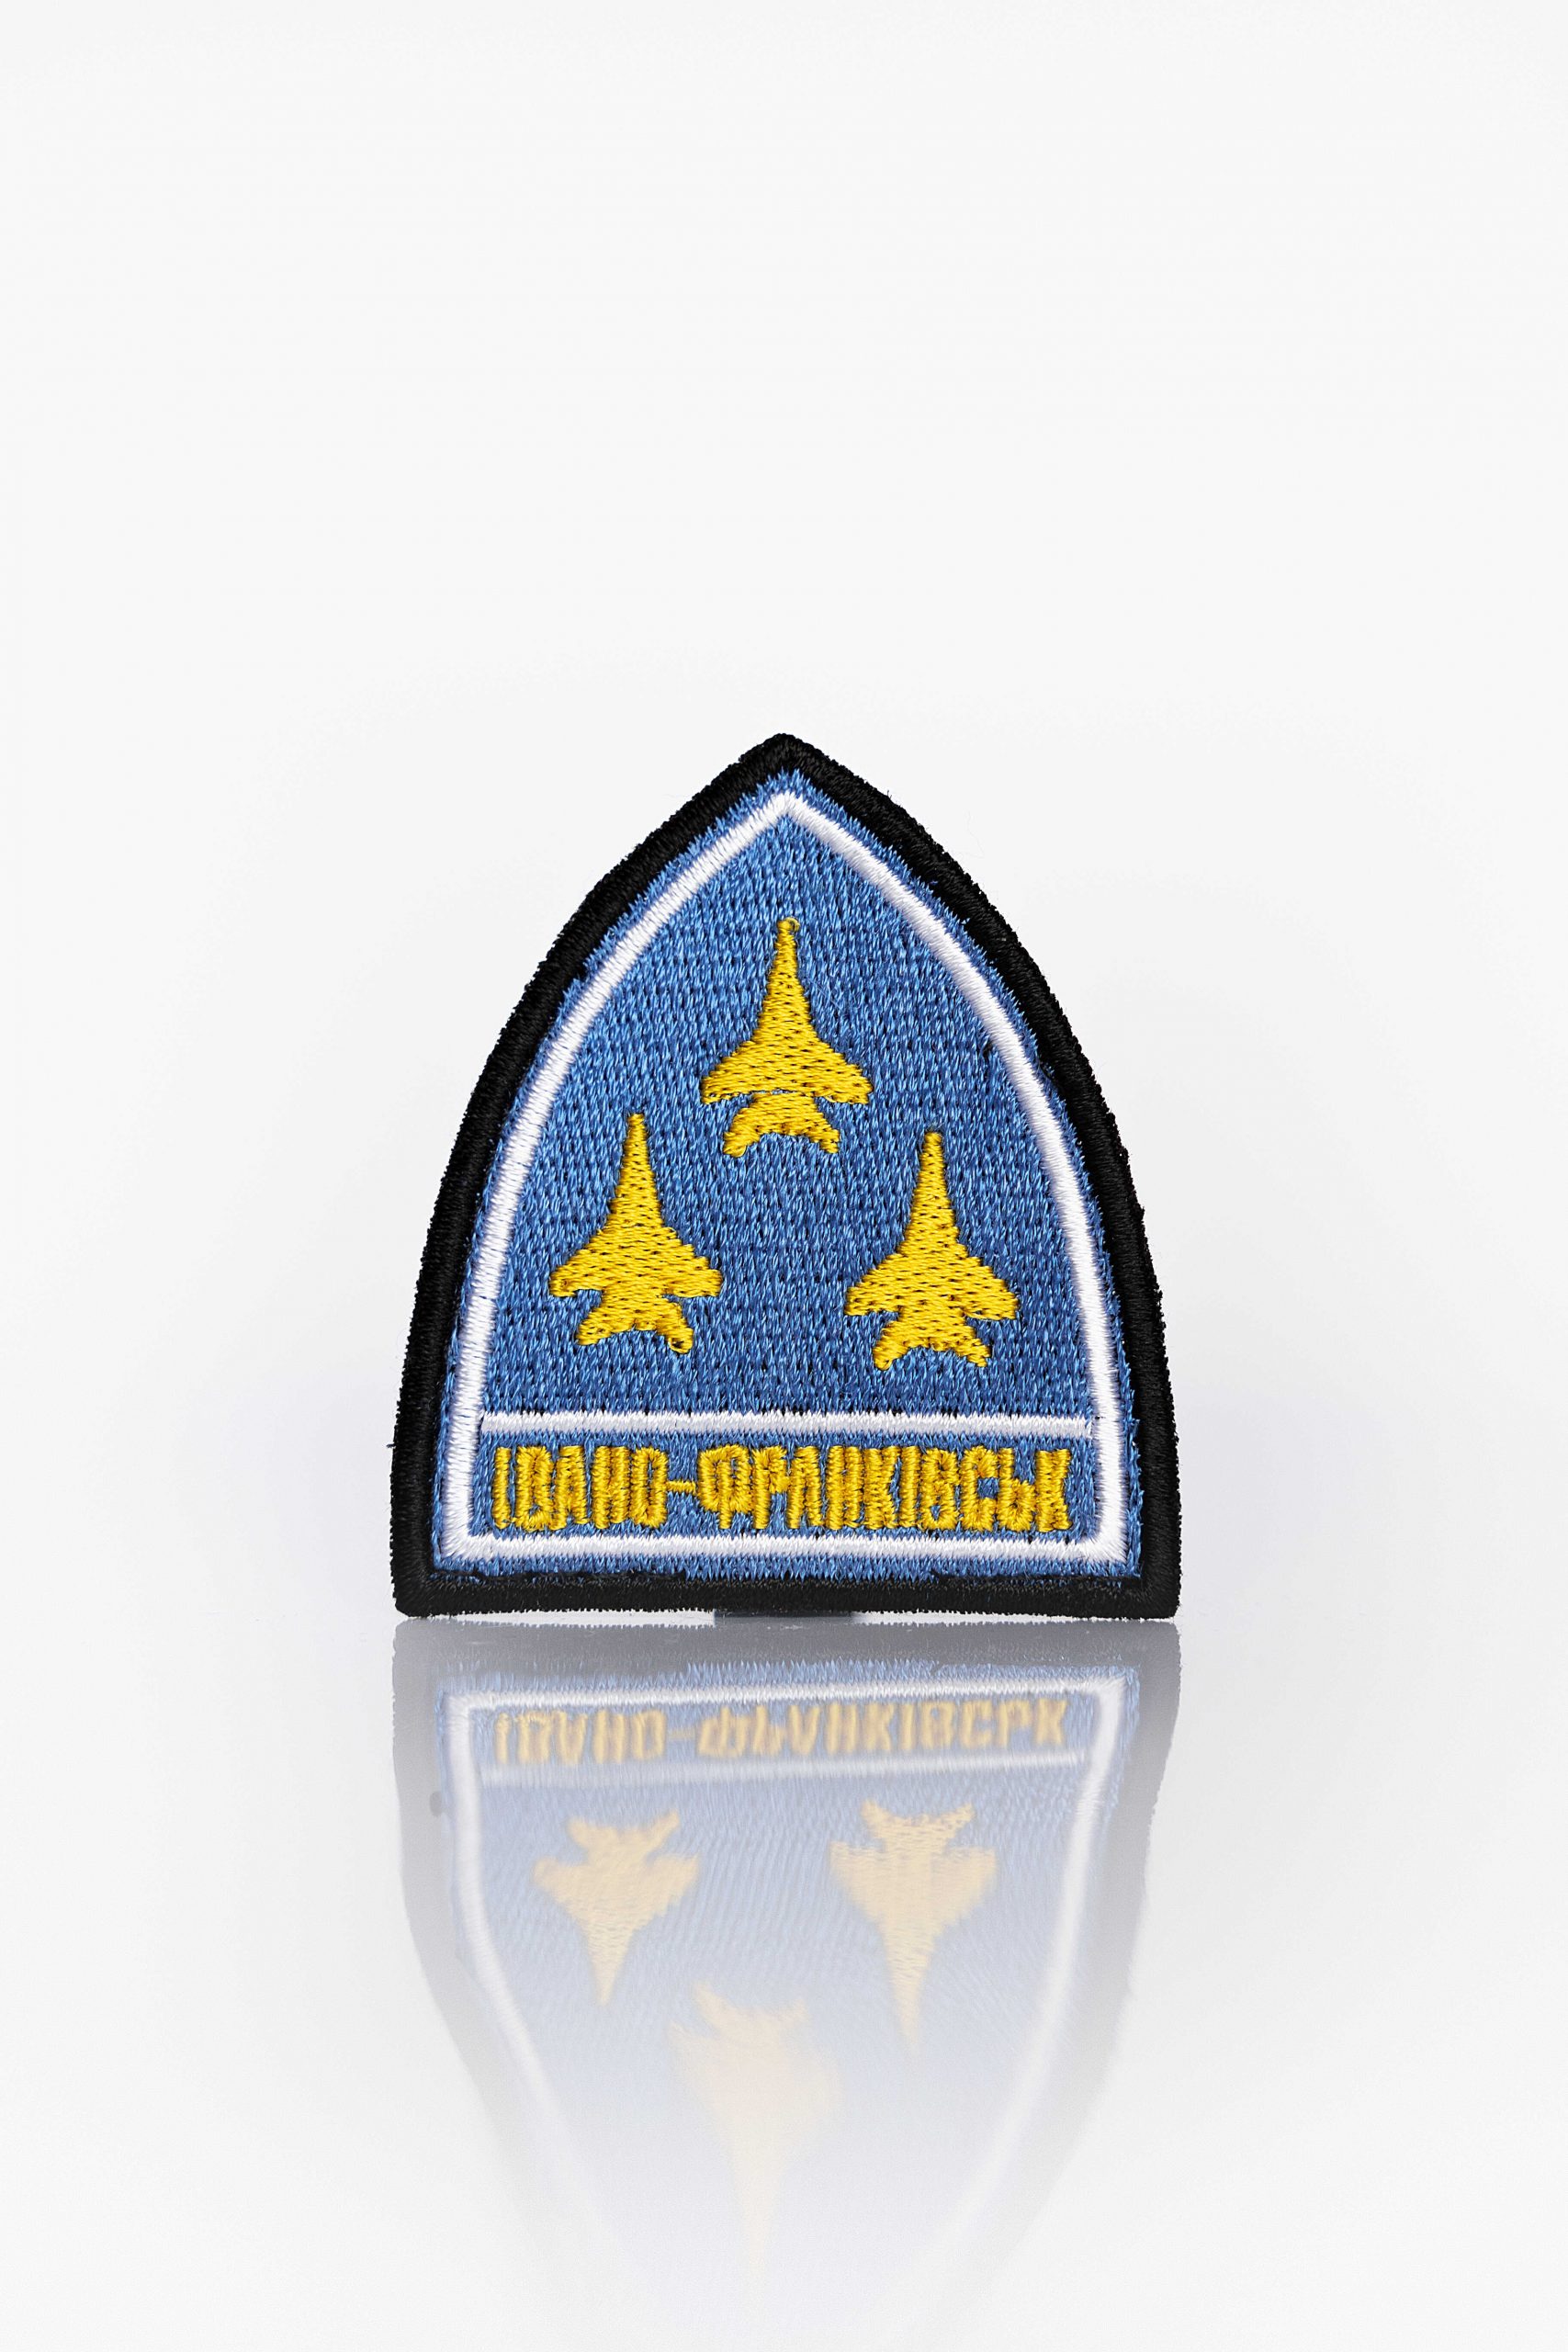 Нашивки 114 Бригада. Колір синій. 114-та бригада тактичної авіації була створена після відновлення незалежності України, у 1992 році.